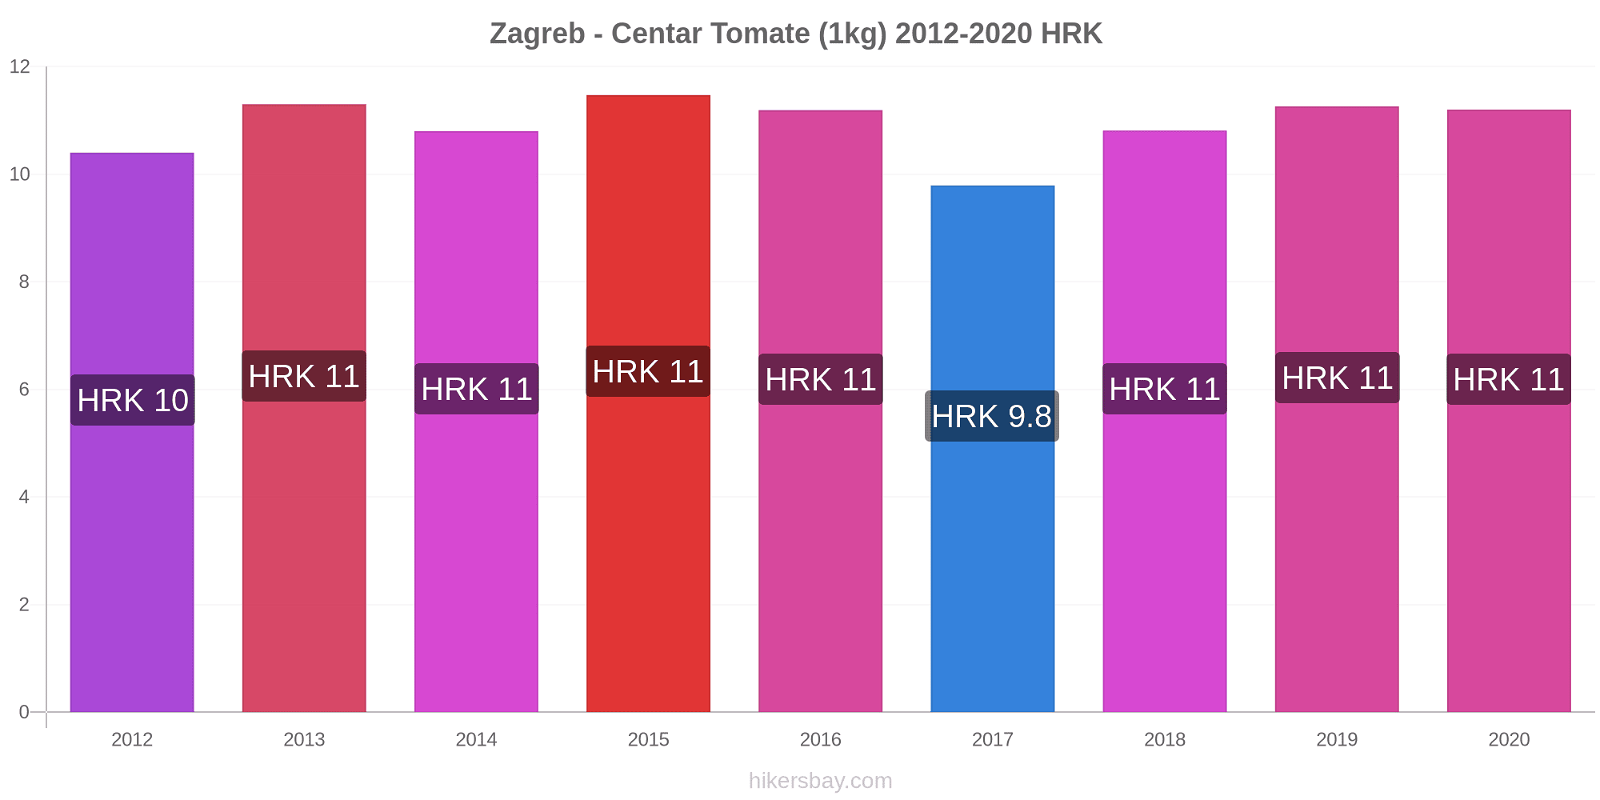 Zagreb - Centar cambios de precios Tomate (1kg) hikersbay.com